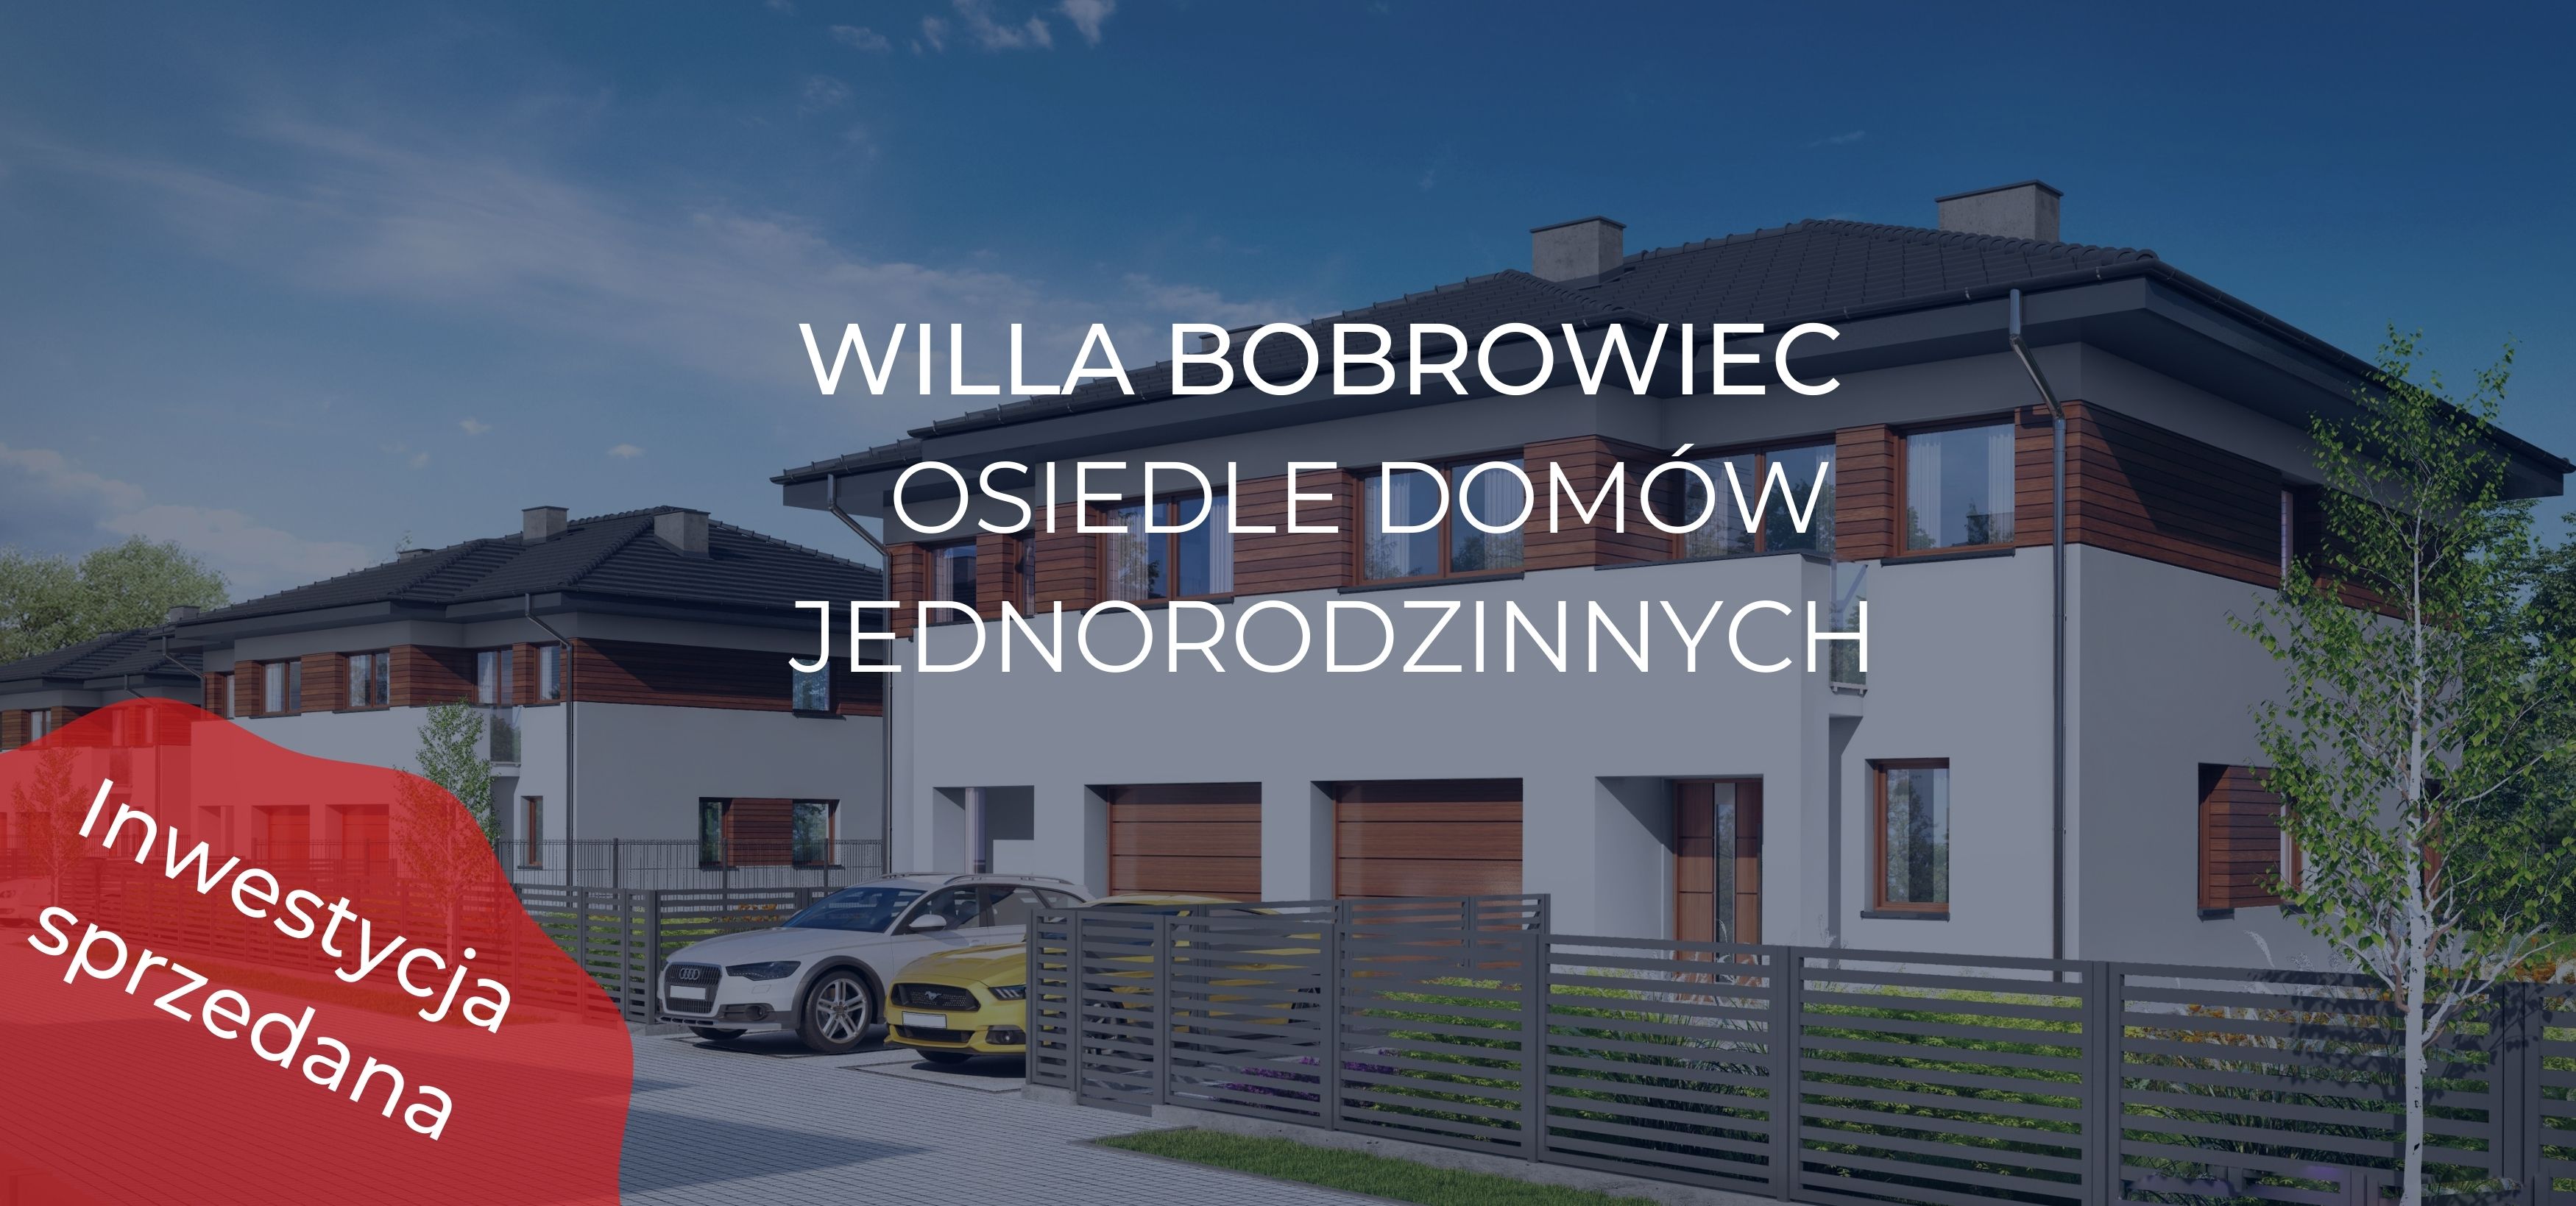 Osiedle Willa Bobrowiec